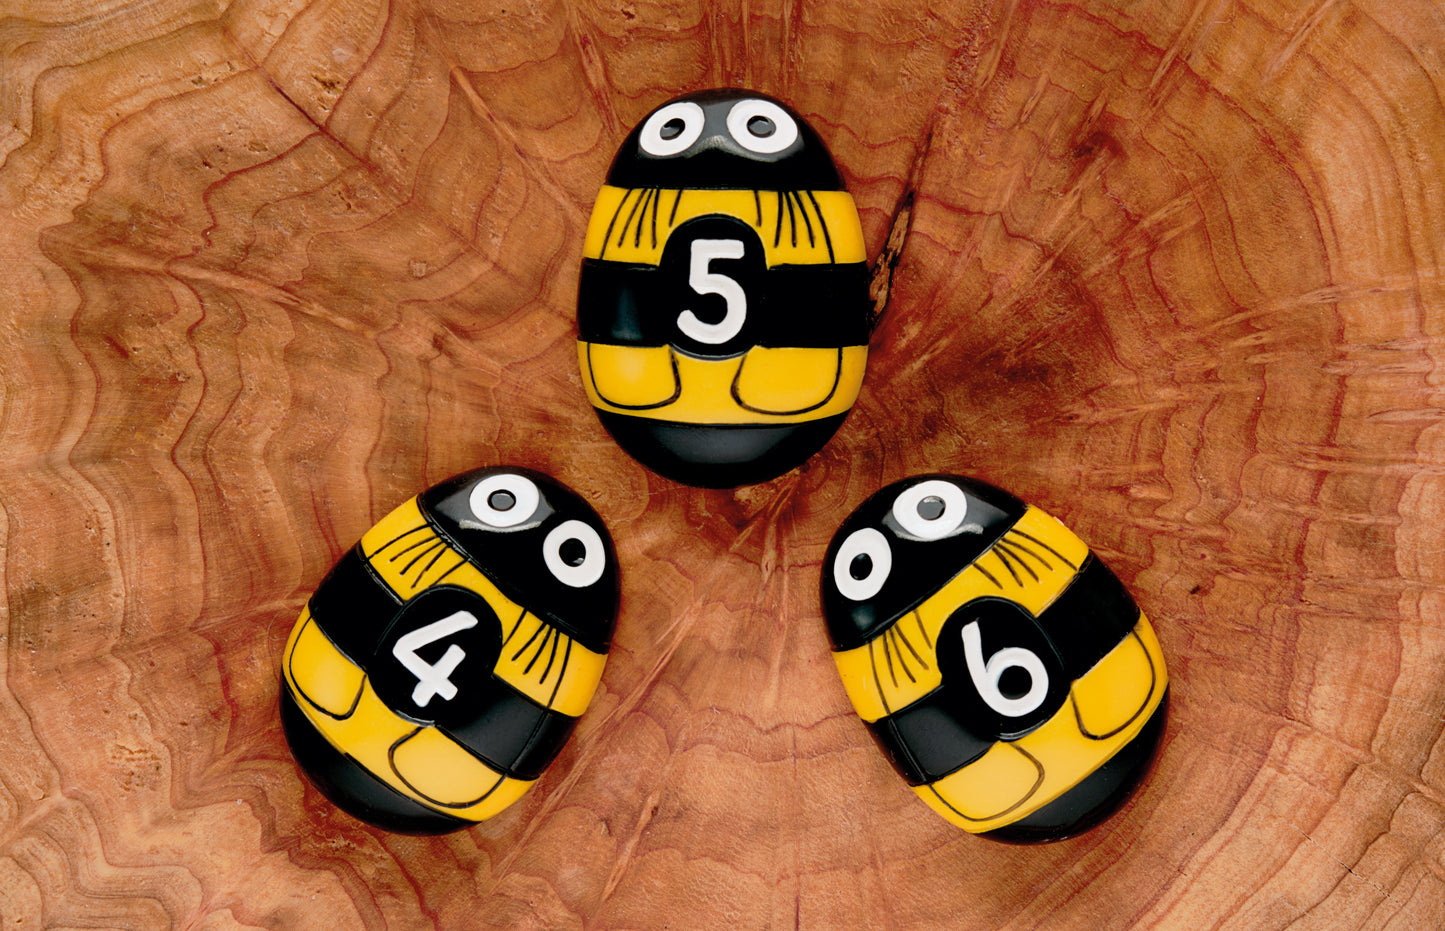 Honey Bee Number Stones (20 stenen)